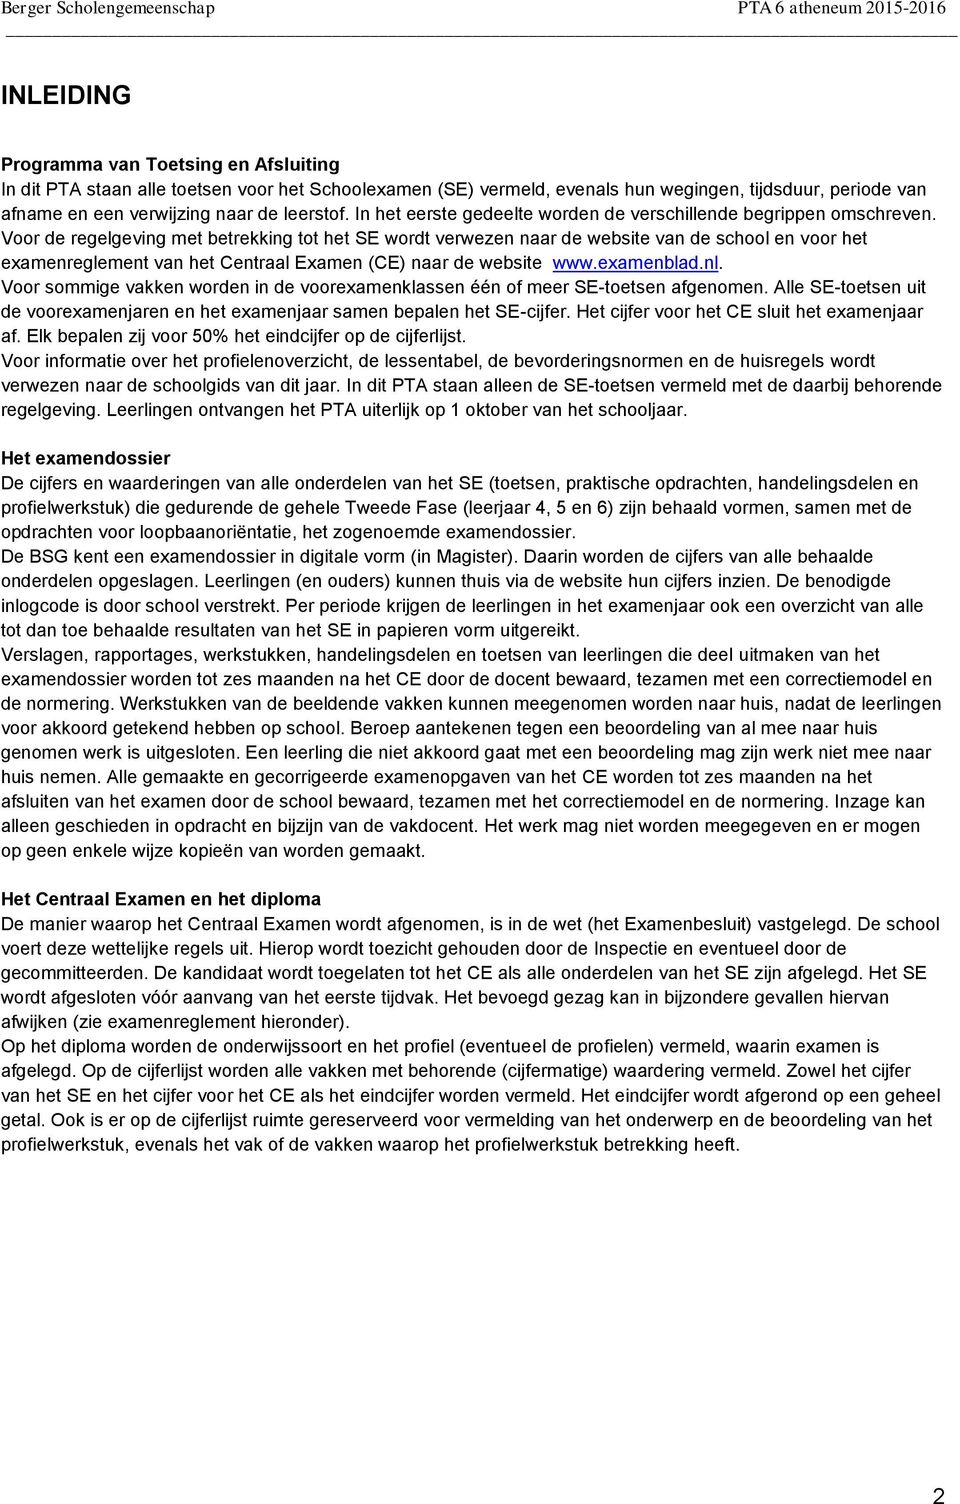 Voor de regelgeving met betrekking tot het SE wordt verwezen naar de website van de school en voor het examenreglement van het Centraal Examen (CE) naar de website www.examenblad.nl.